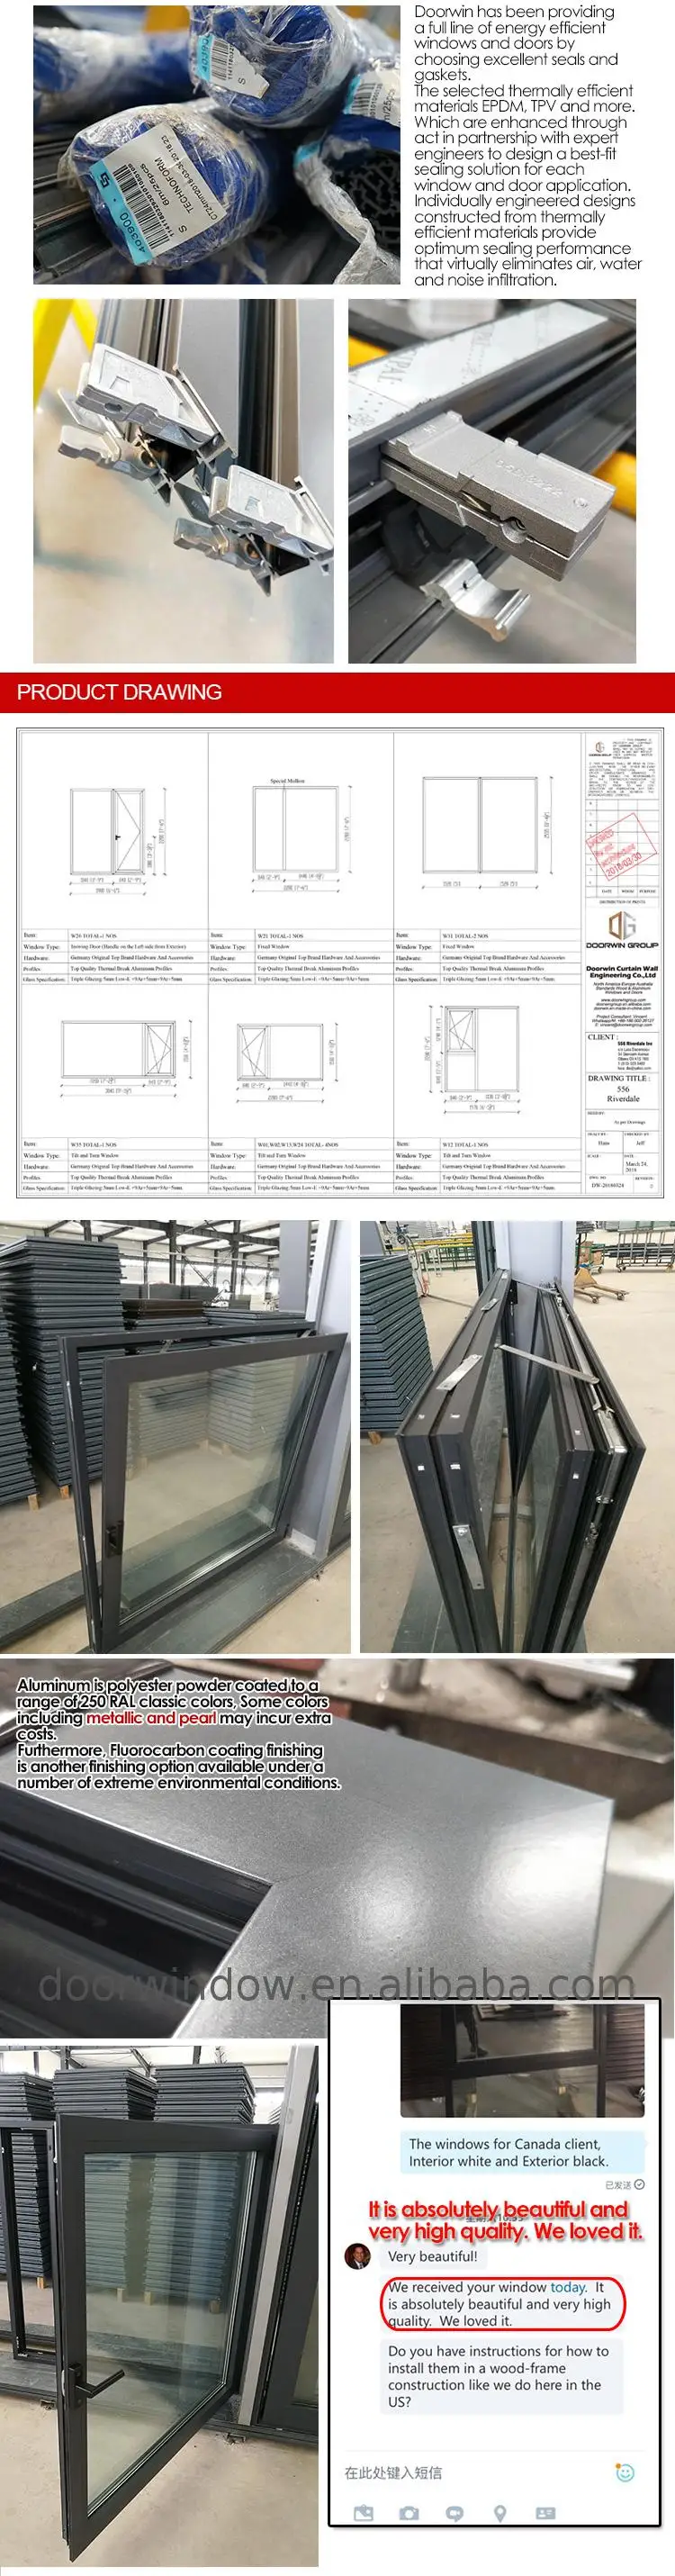 High efficiency hollow glass swing window heat strengthened german hardware